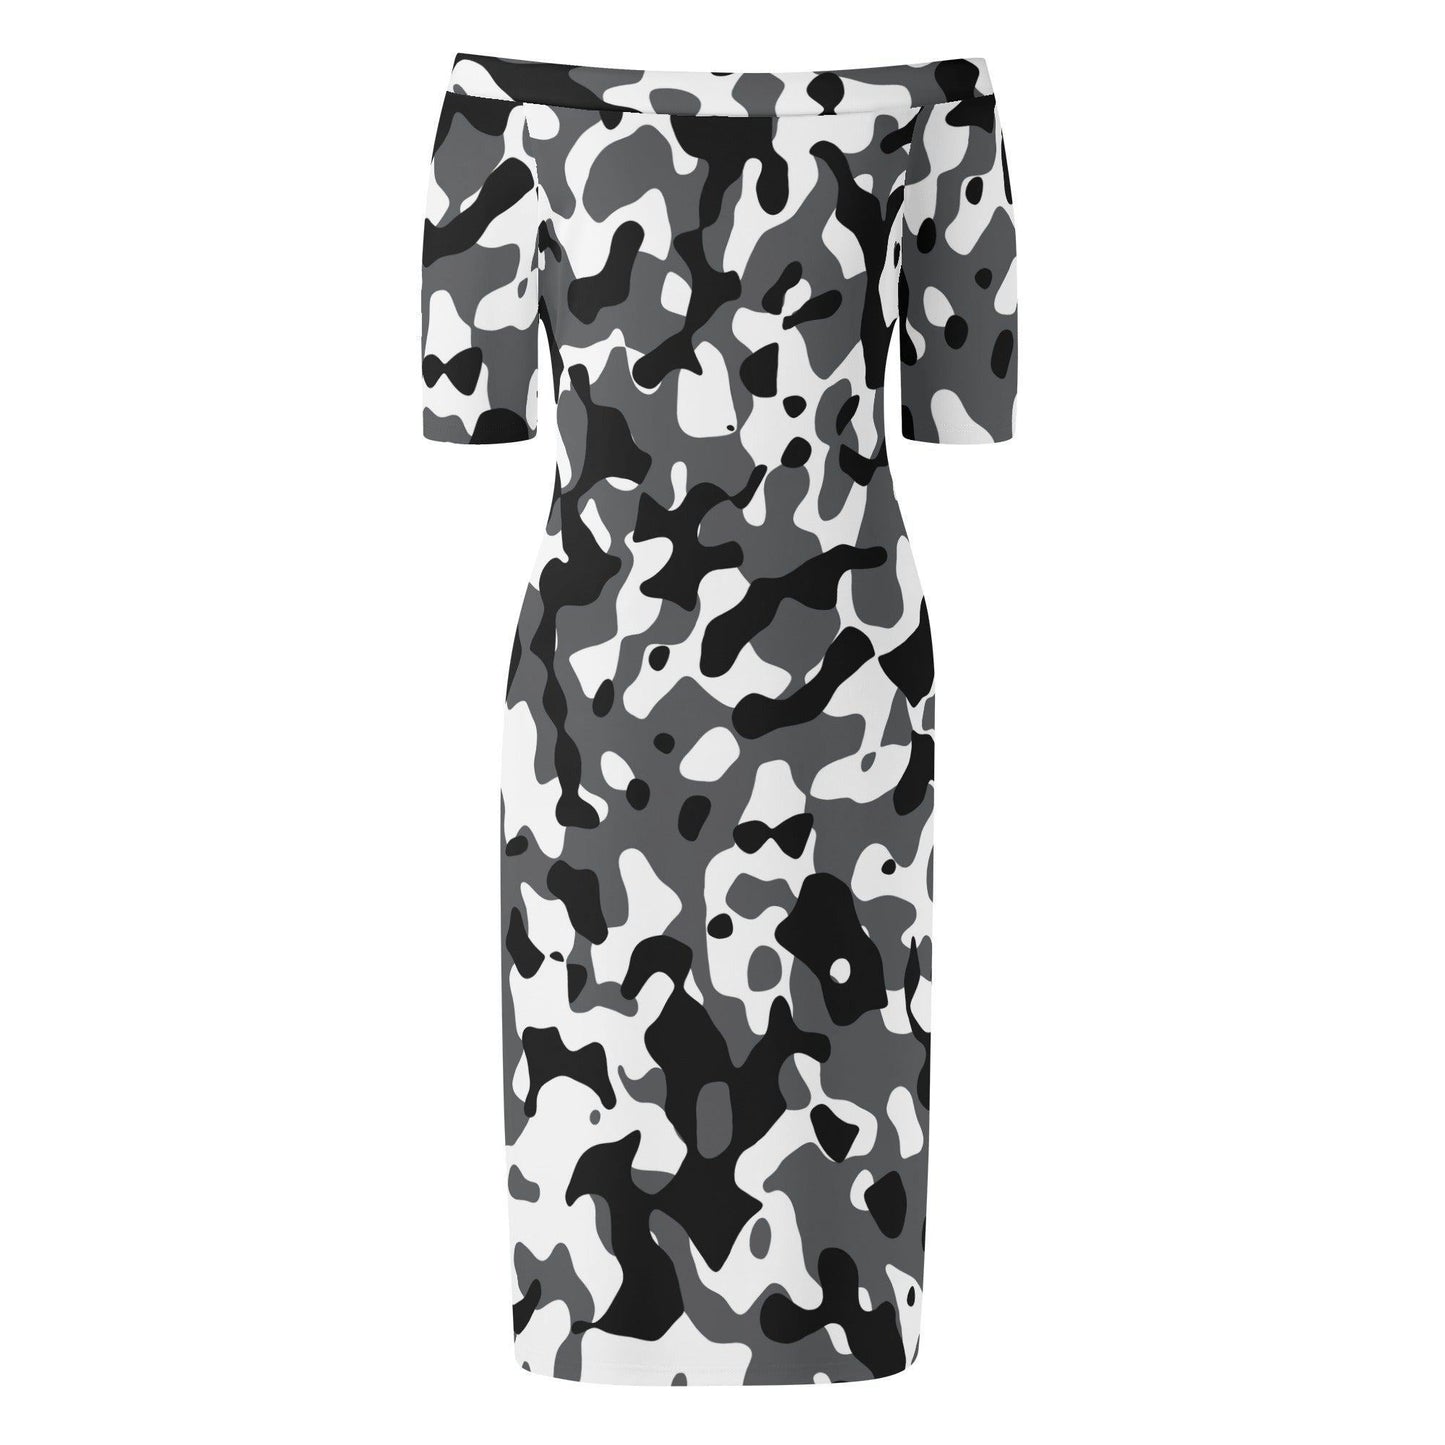 Schwarz Grau Weiß Camouflage Off-Shoulder-Kleid -- Schwarz Grau Weiß Camouflage Off-Shoulder-Kleid - undefined Off-Shoulder-Kleid | JLR Design